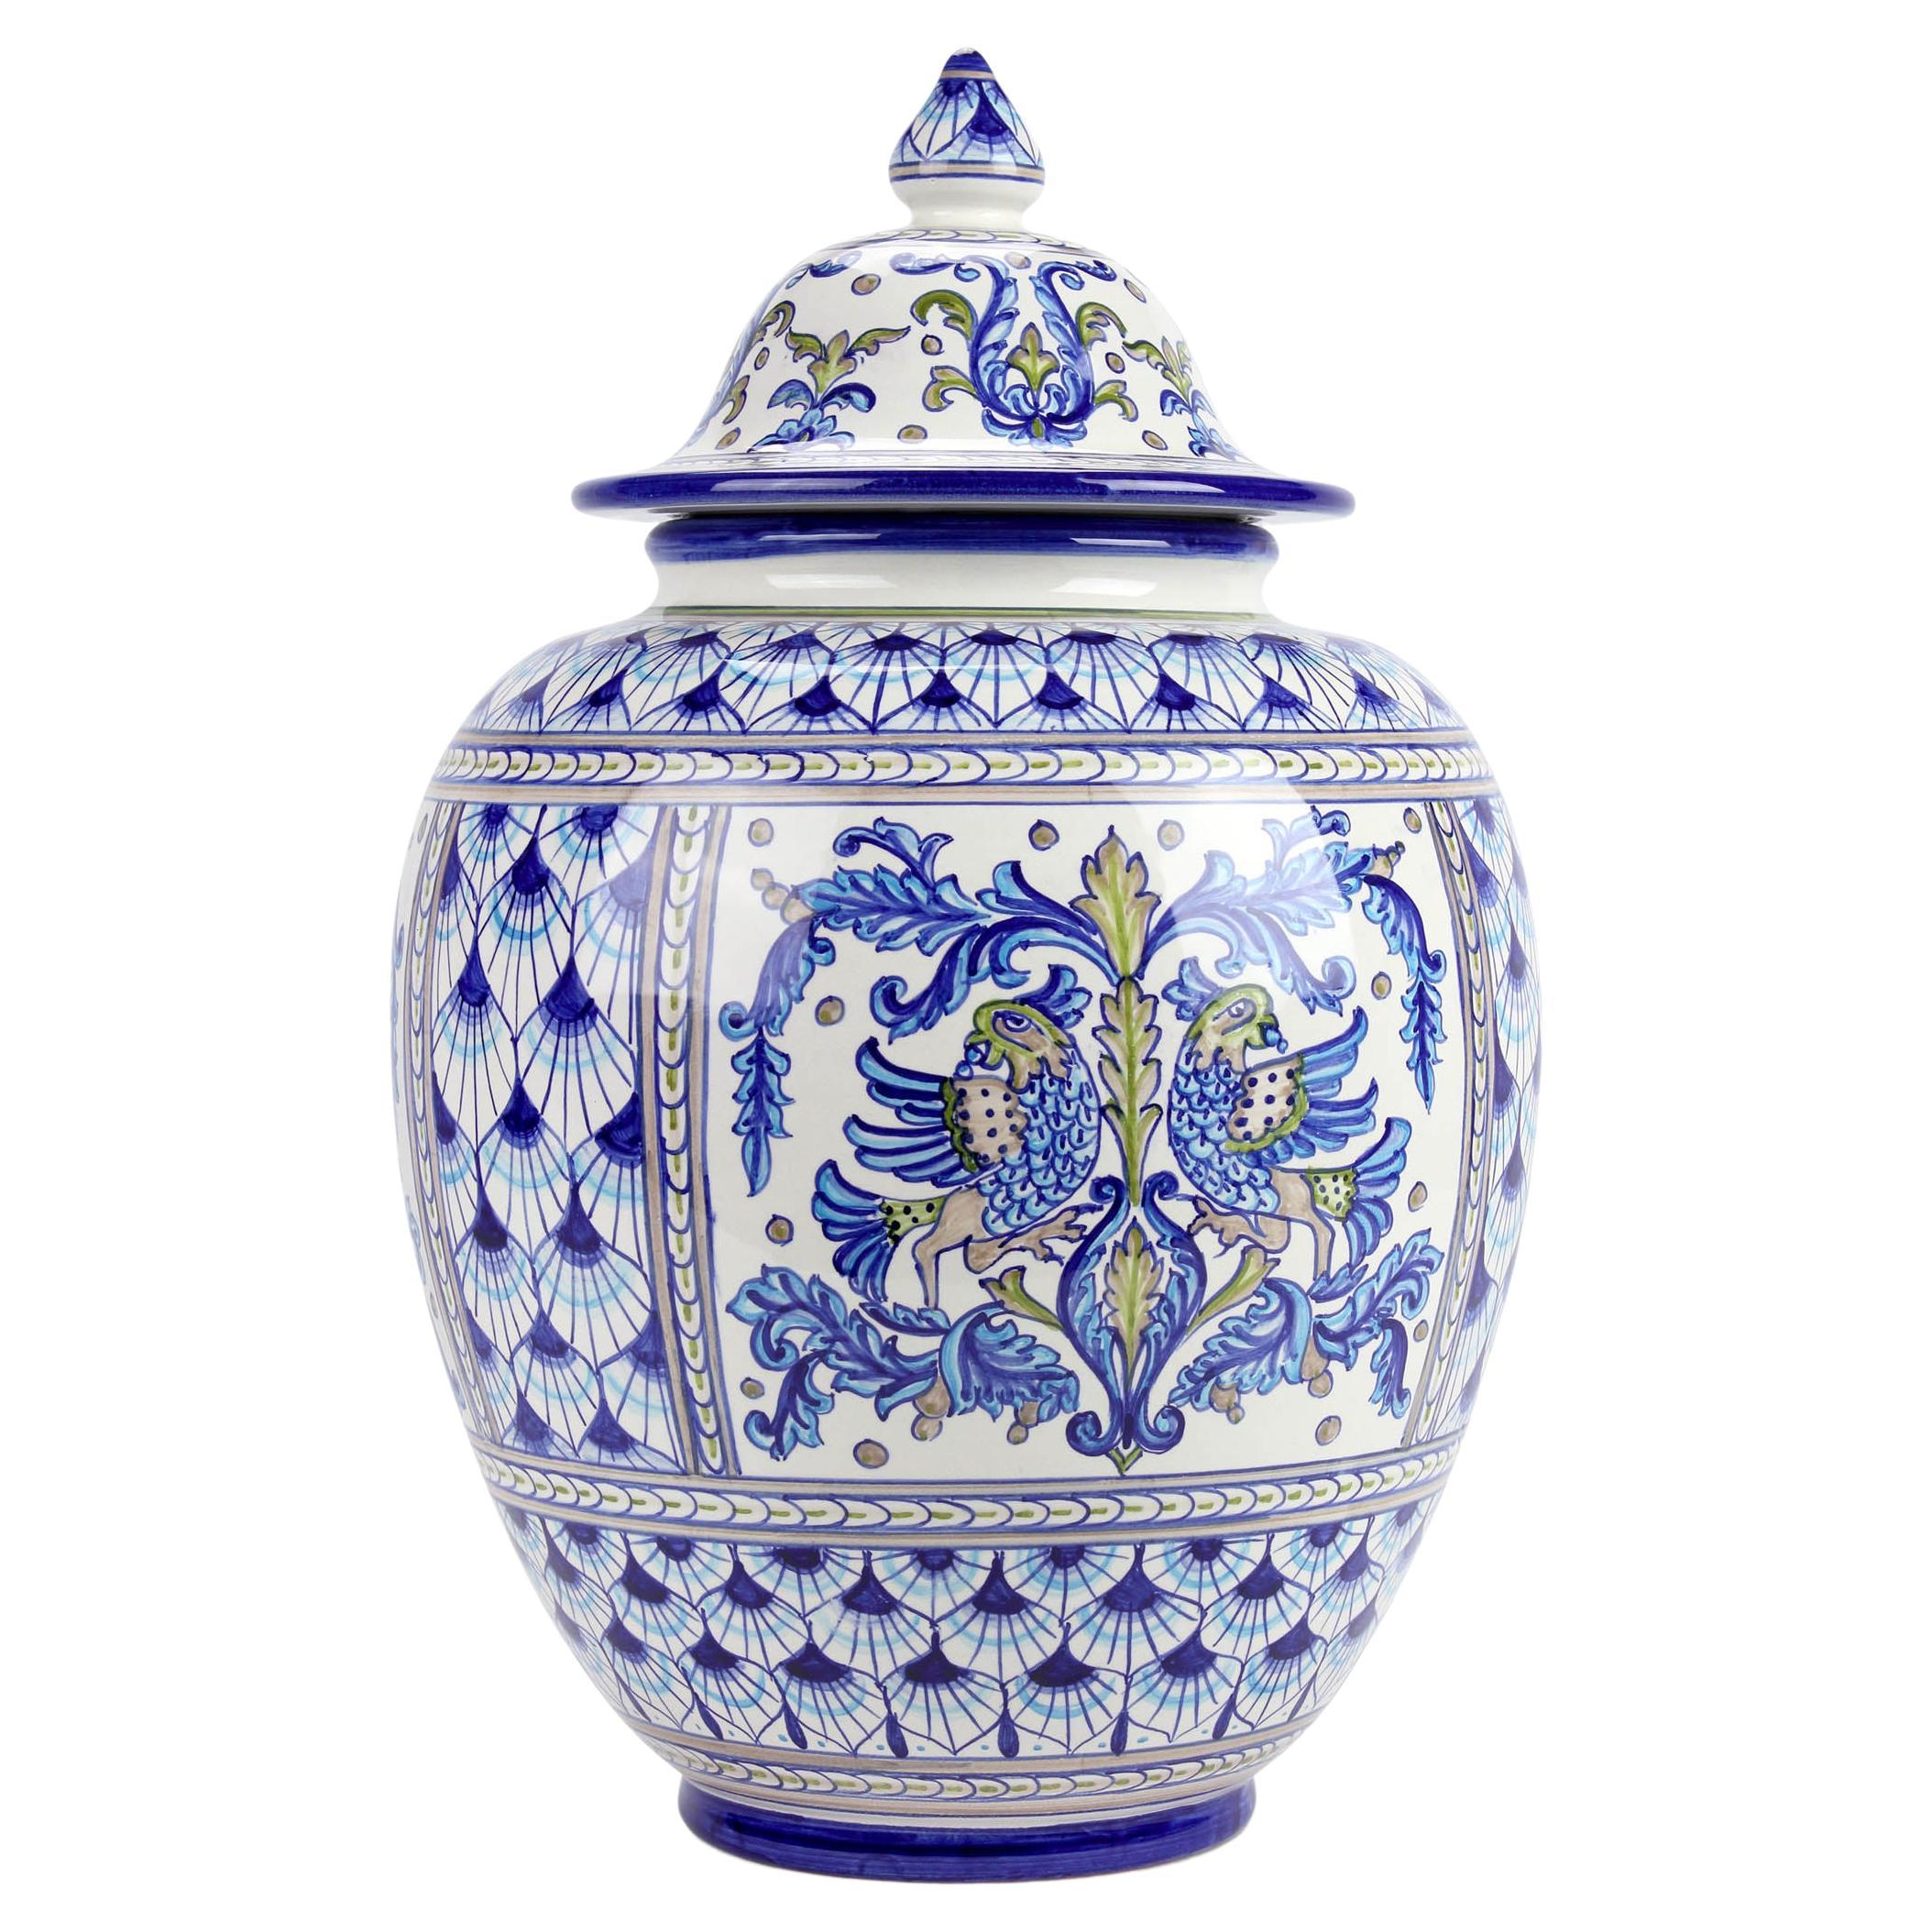 Blaue Keramik Potiche Tafelaufsatz Vase Deckel Majolika handbemalt Deruta Italien